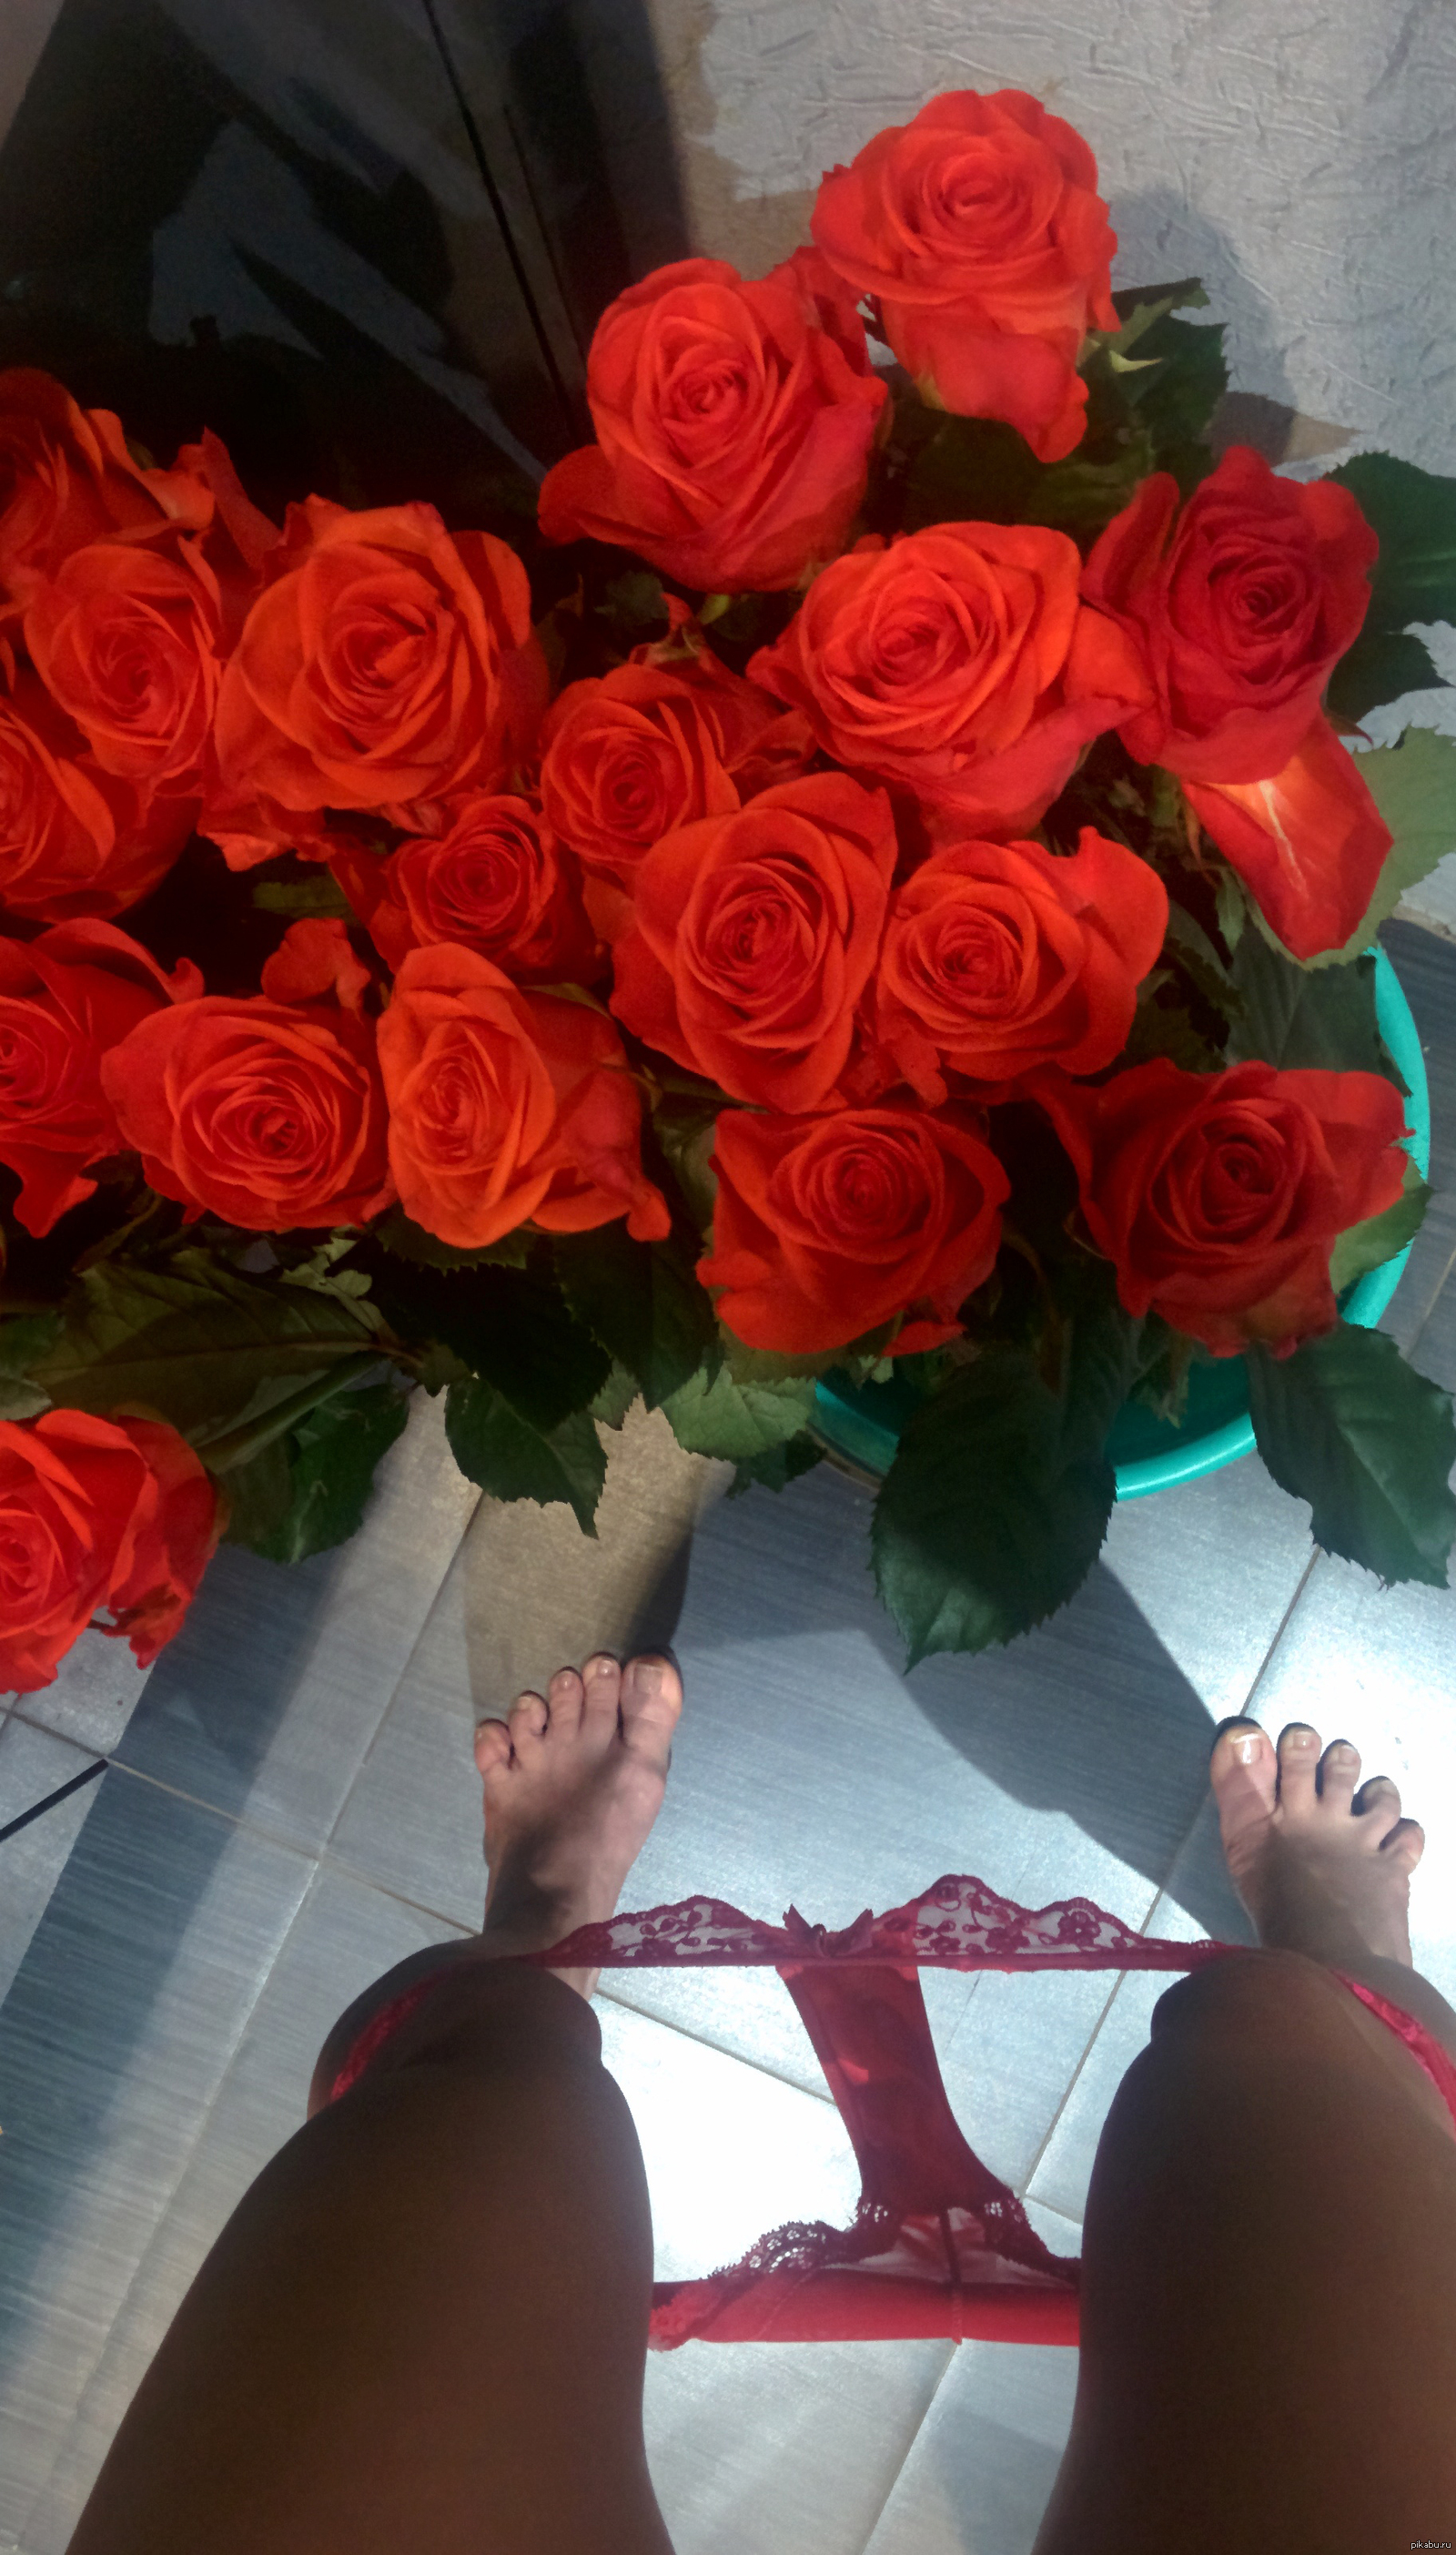 Букет цветов фото реальное в руках. Букет роз в руках. Красивый букет цветов в руках. Цветы подарок для девушки. Красивый букет дома.